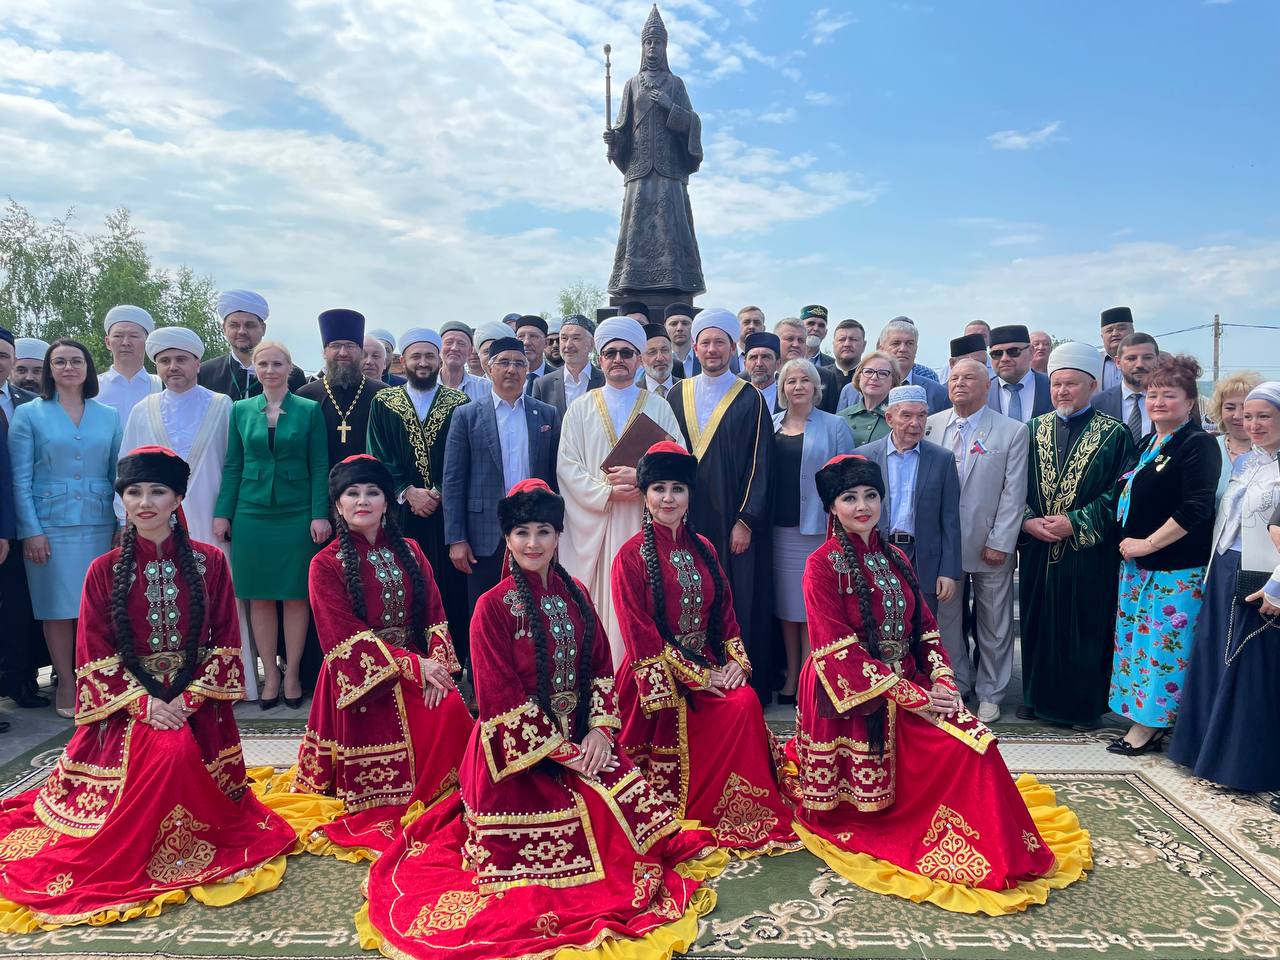 مفتي روسيا يكشف النقاب عن النصب التذكاري لمملكة قازان الأسطورية وملكتها المسلمة